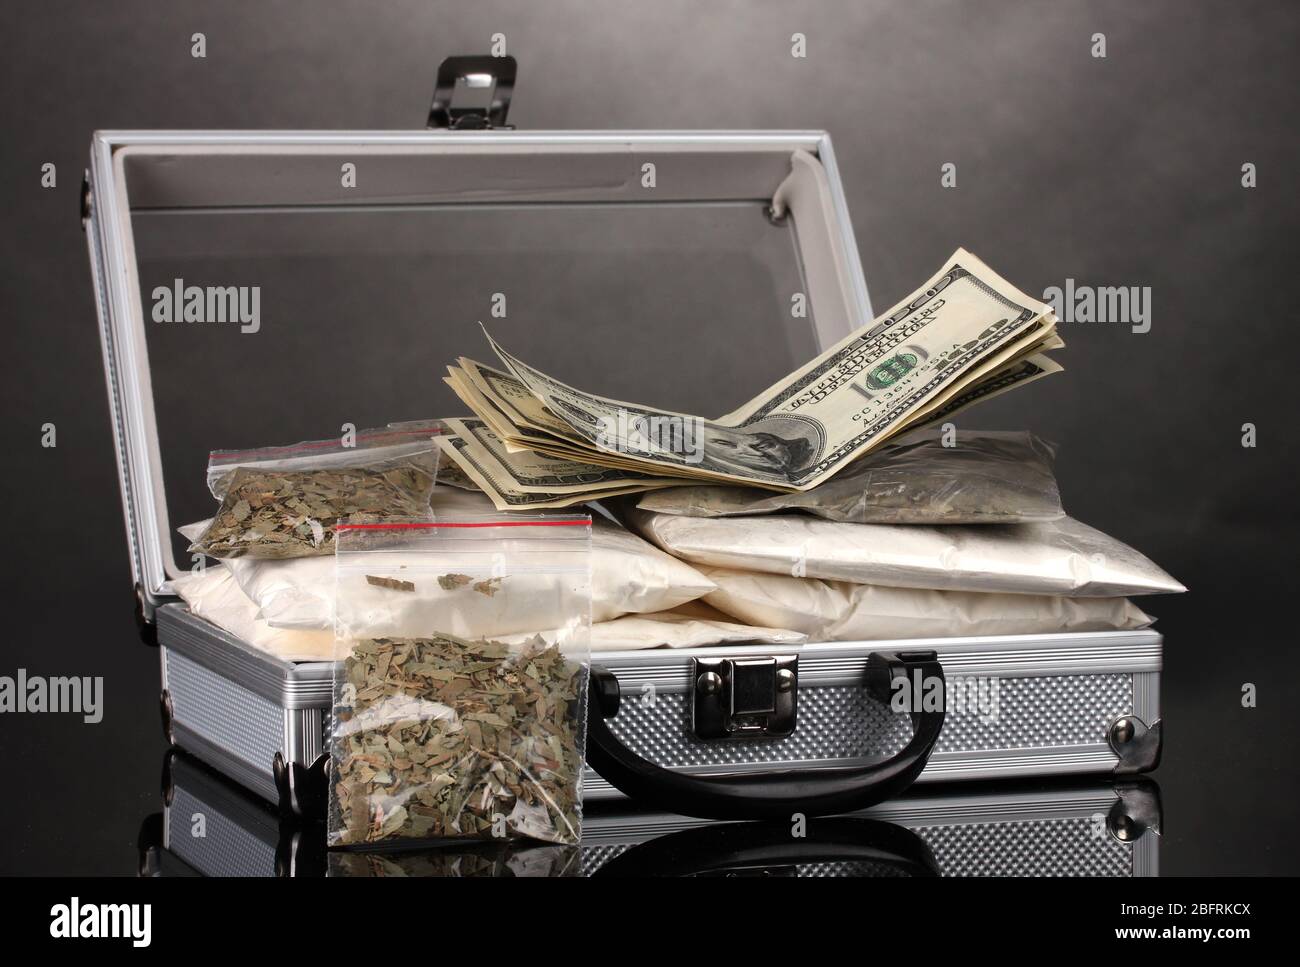 Cocaïne et marijuana dans une valise isolée sur blanc Banque D'Images